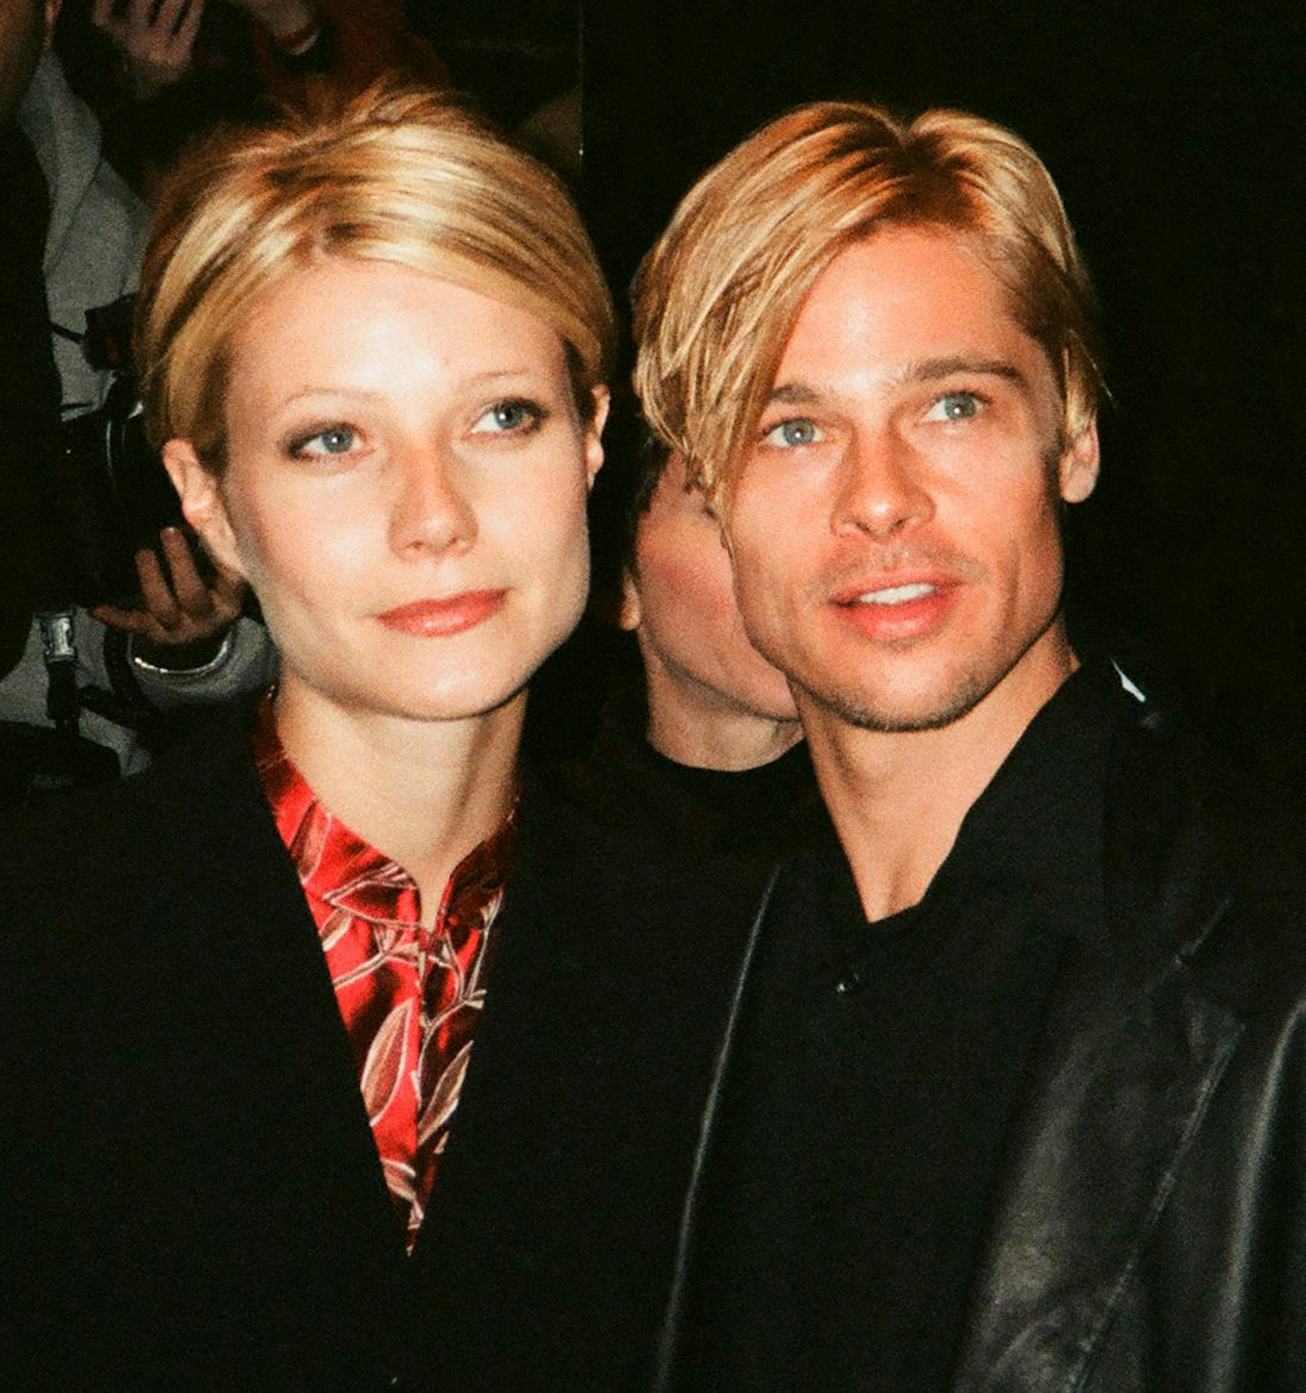 Gwyneth Paltrow and Brad Pitt in 1997.